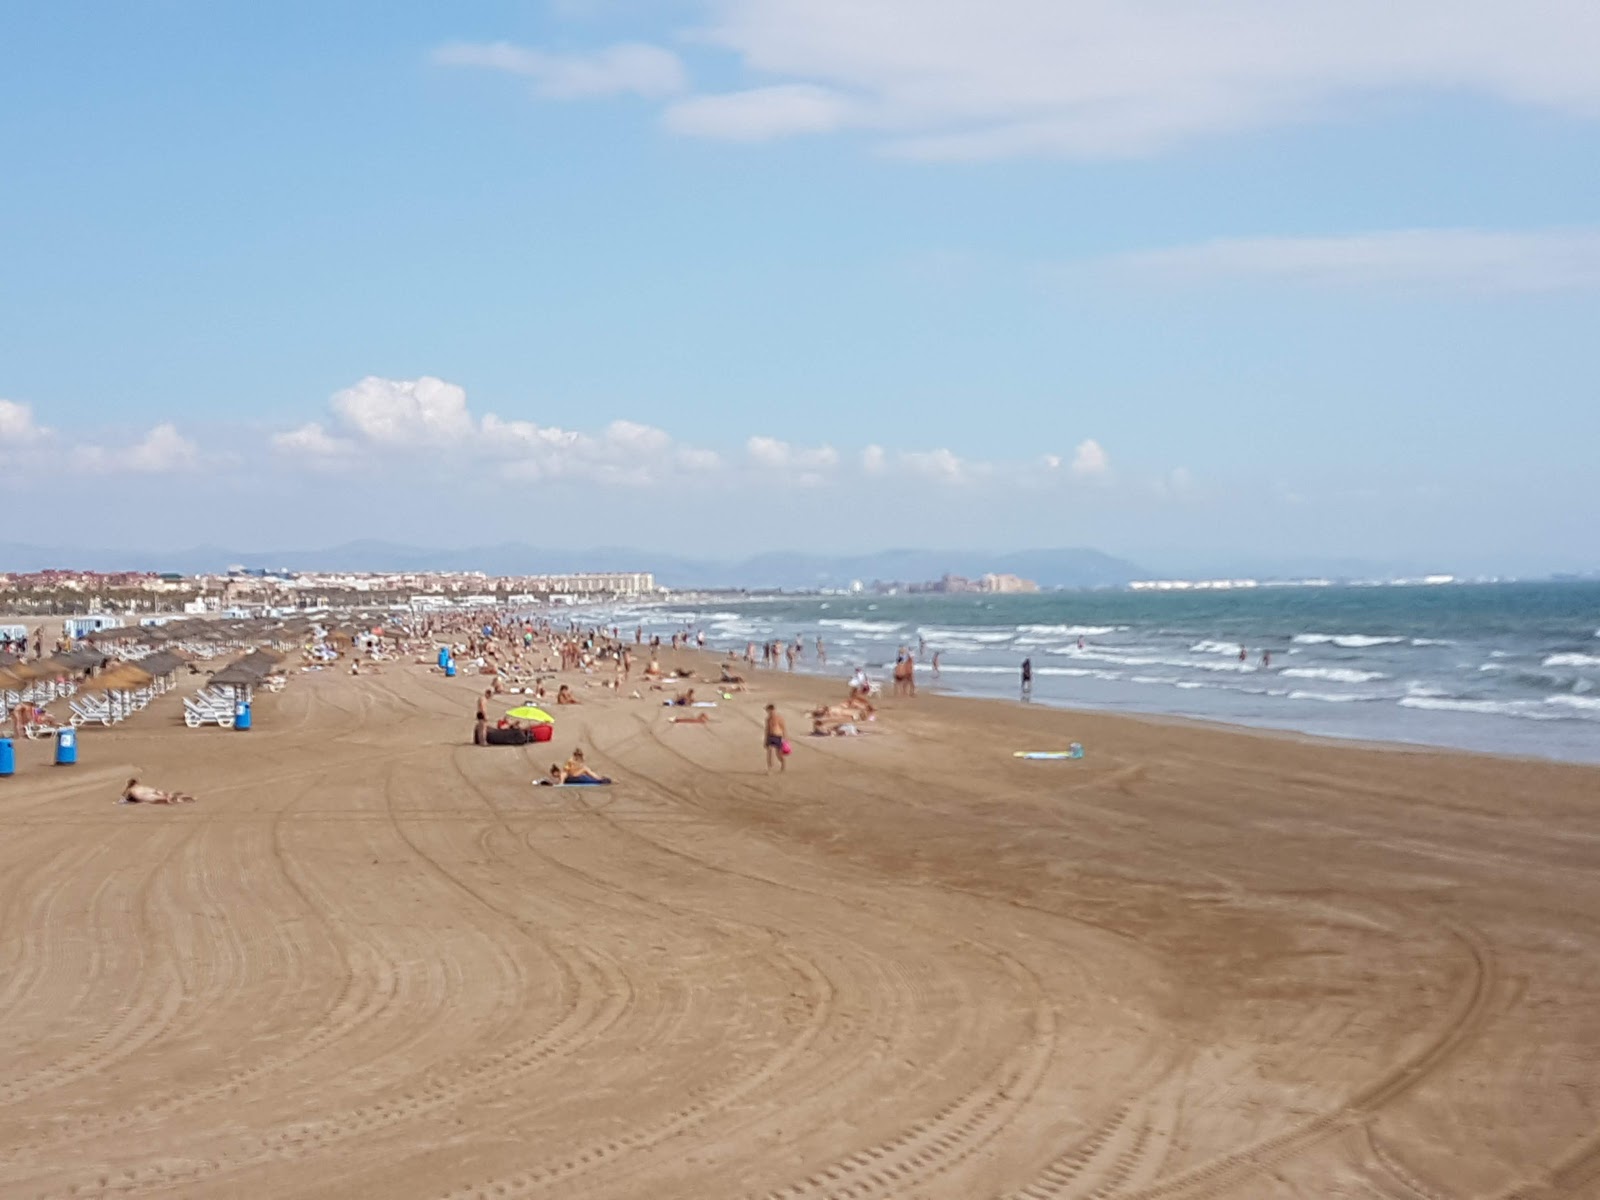 Malva-rosa Plajı'in fotoğrafı geniş plaj ile birlikte